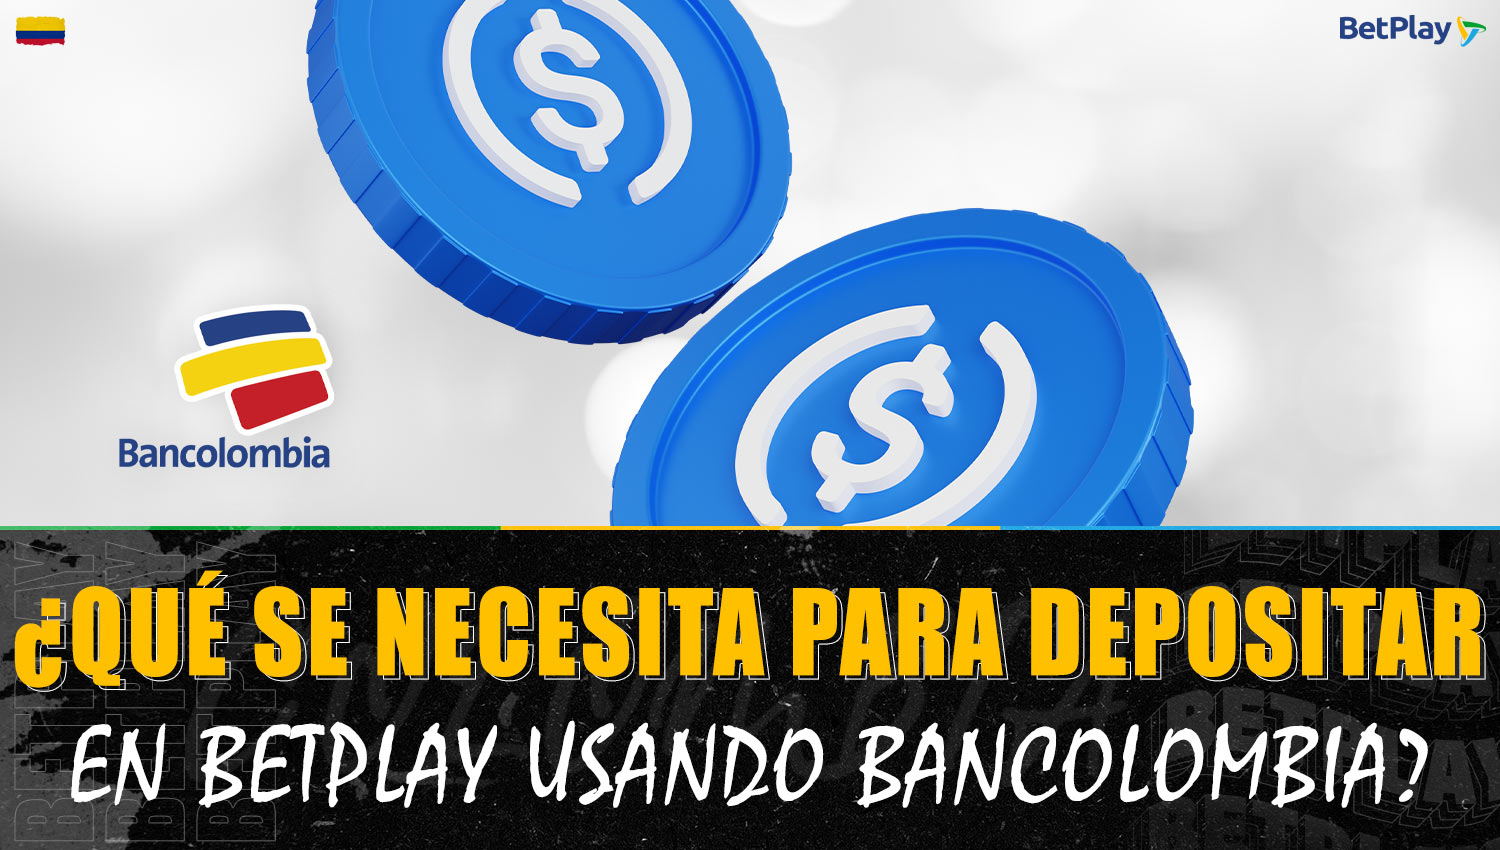 Condiciones y requisitos para recargar la cuenta de Betplay a través de Bancolombia